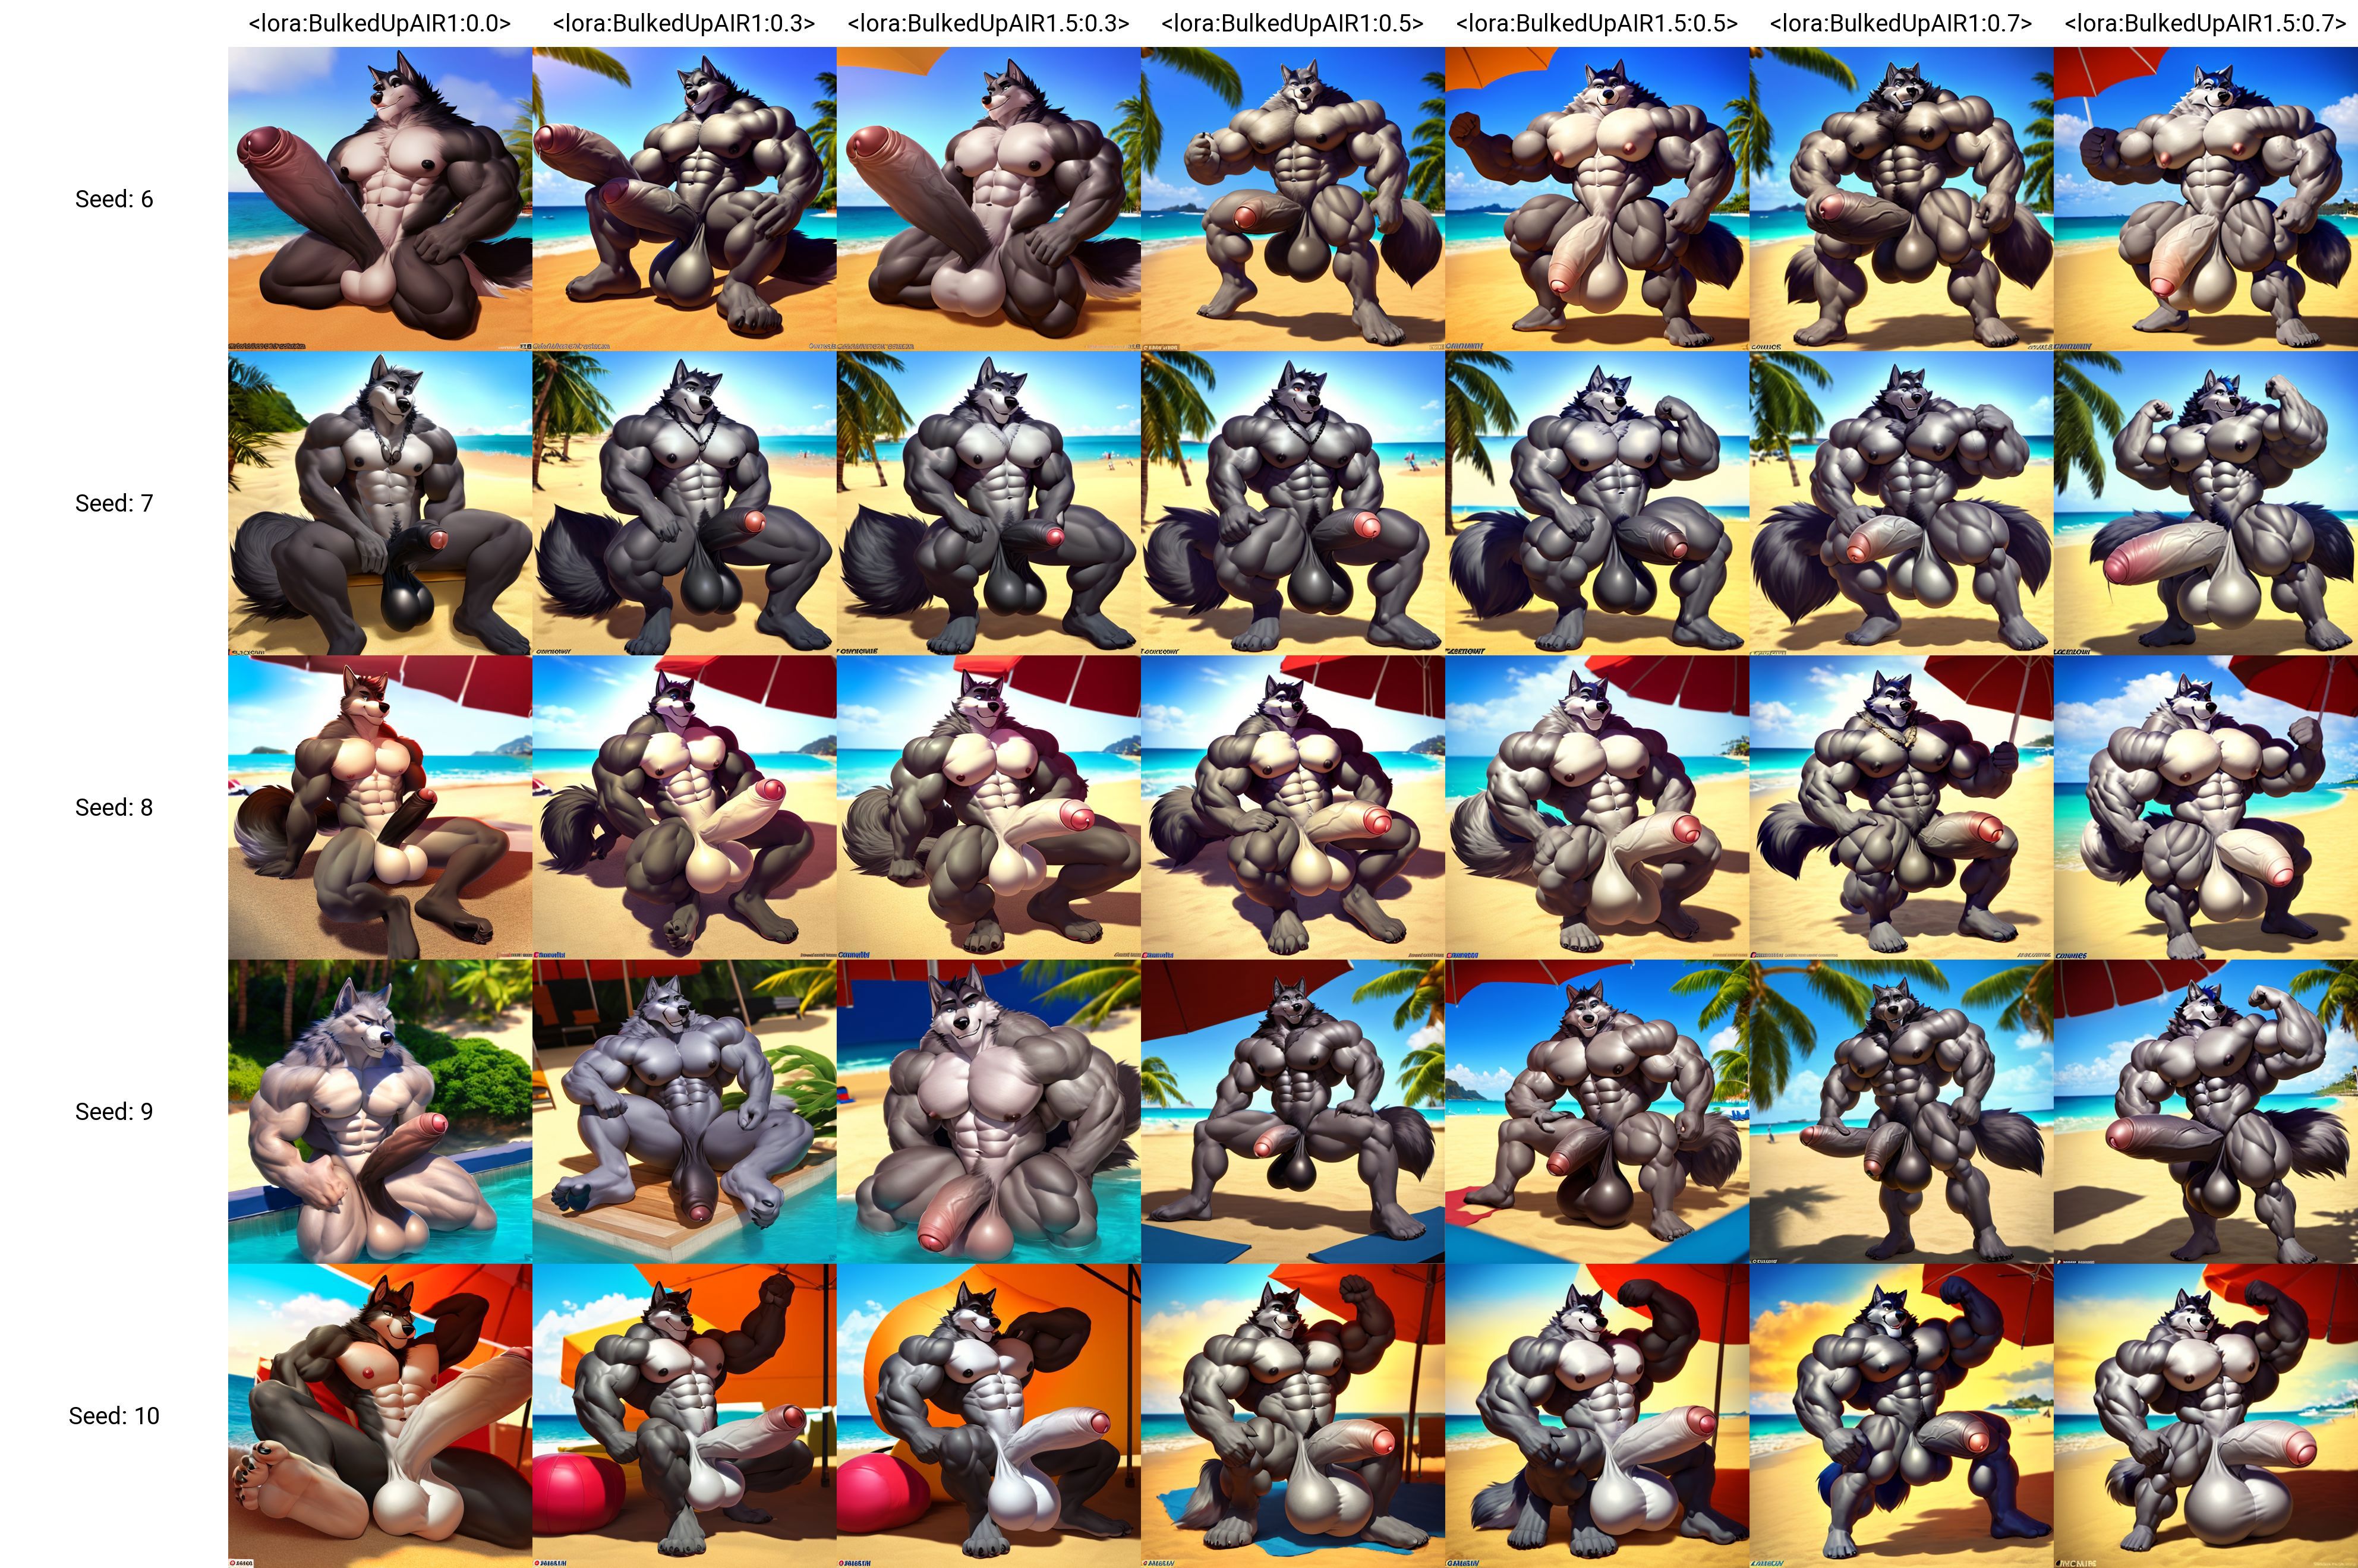 BulkedUp AI (Huge Muscles LoRA) image by Mr_Yakuza